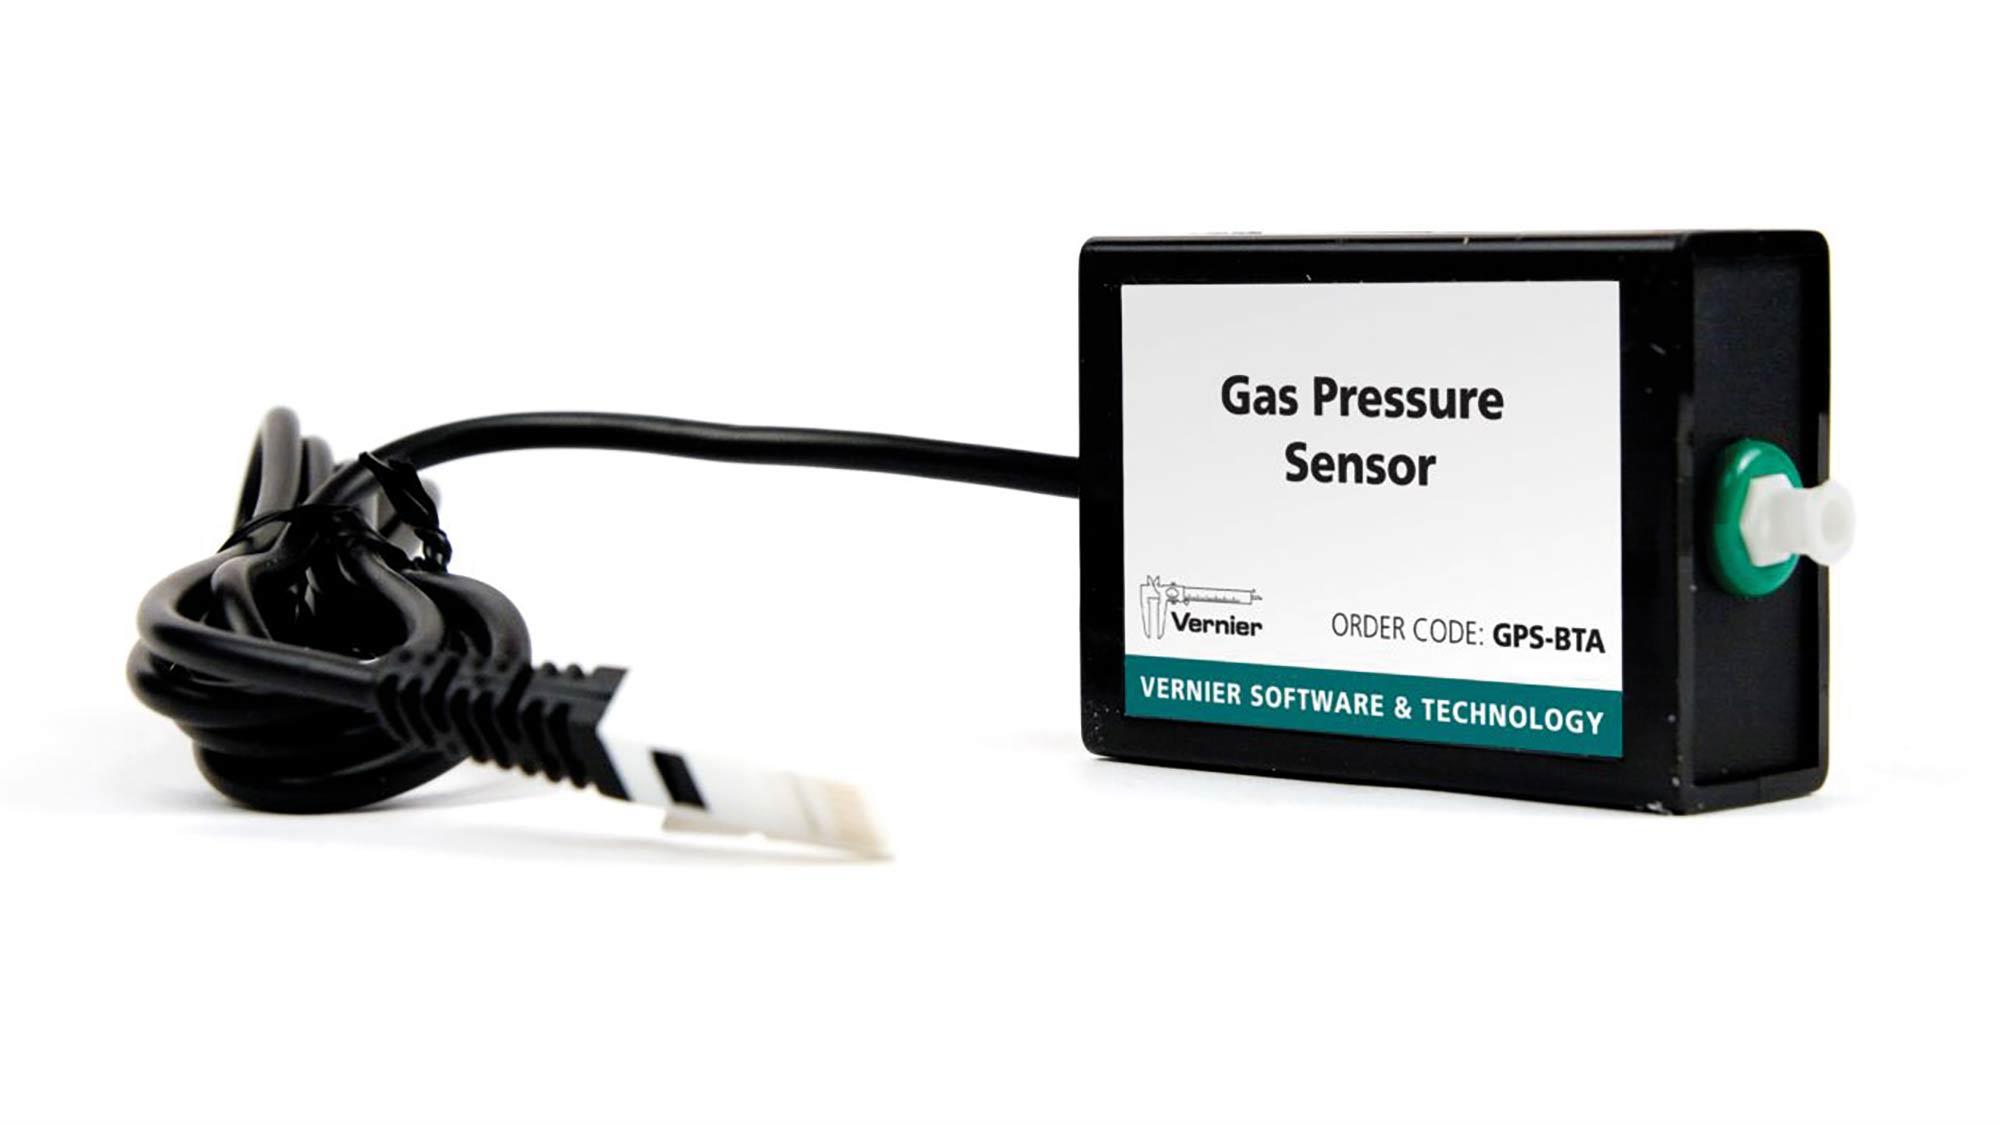 VERNIER Gasdruck-Sensor bietet den Einsatz für Expperimente zur Atmung, Transpiration, Boyle`s Geset